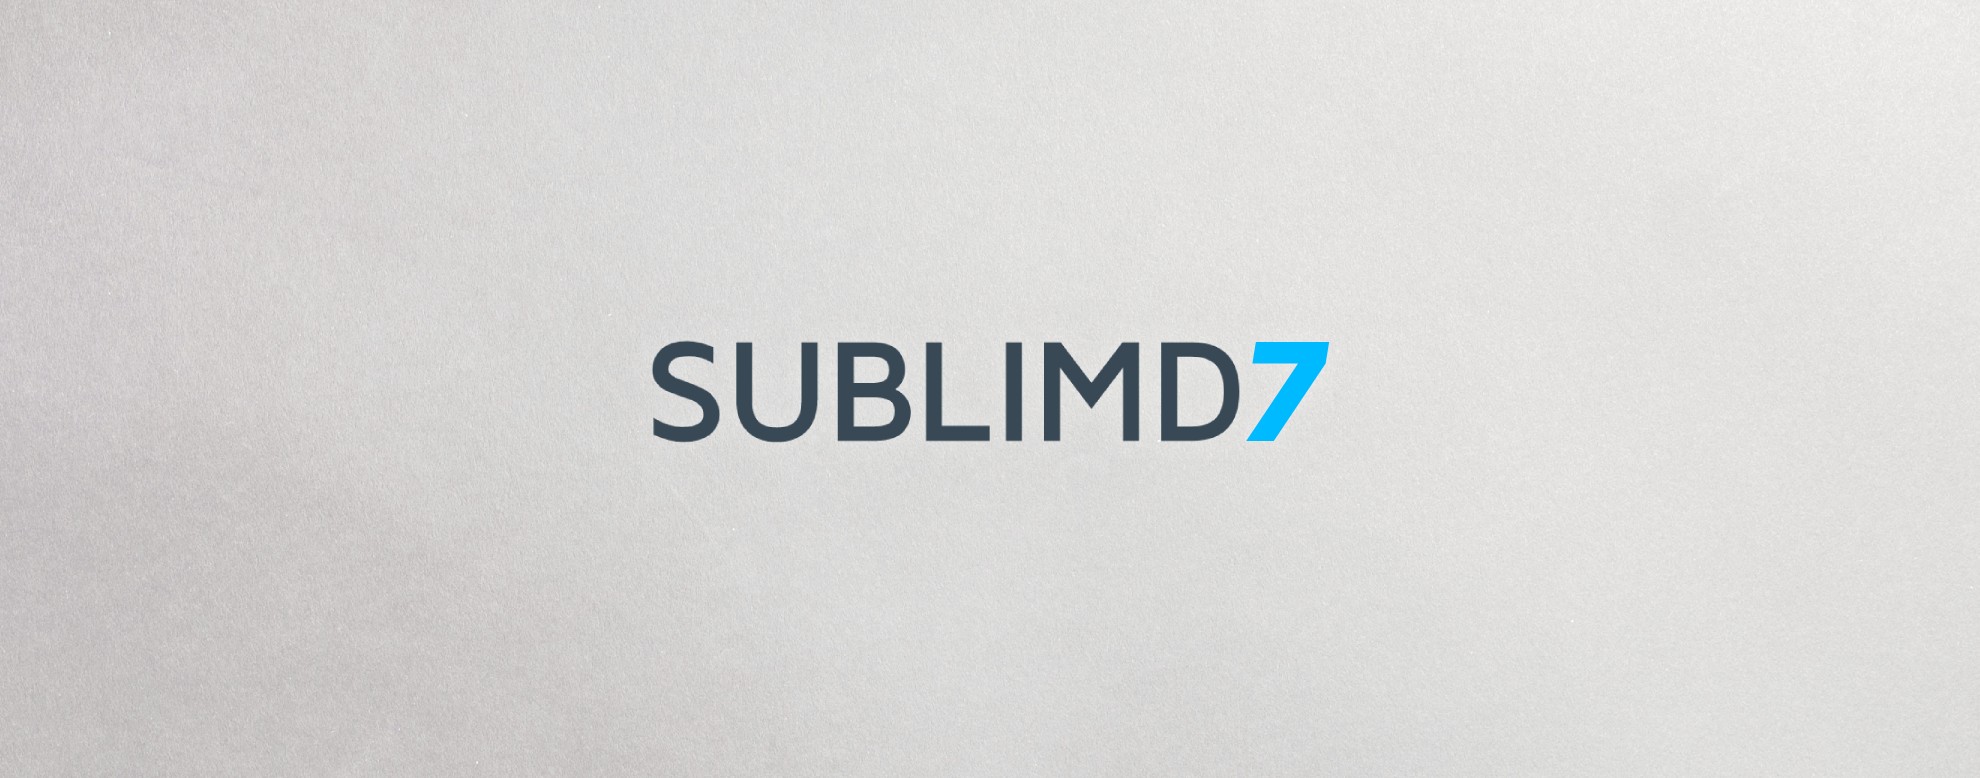 sublimd 7.0 Teaser